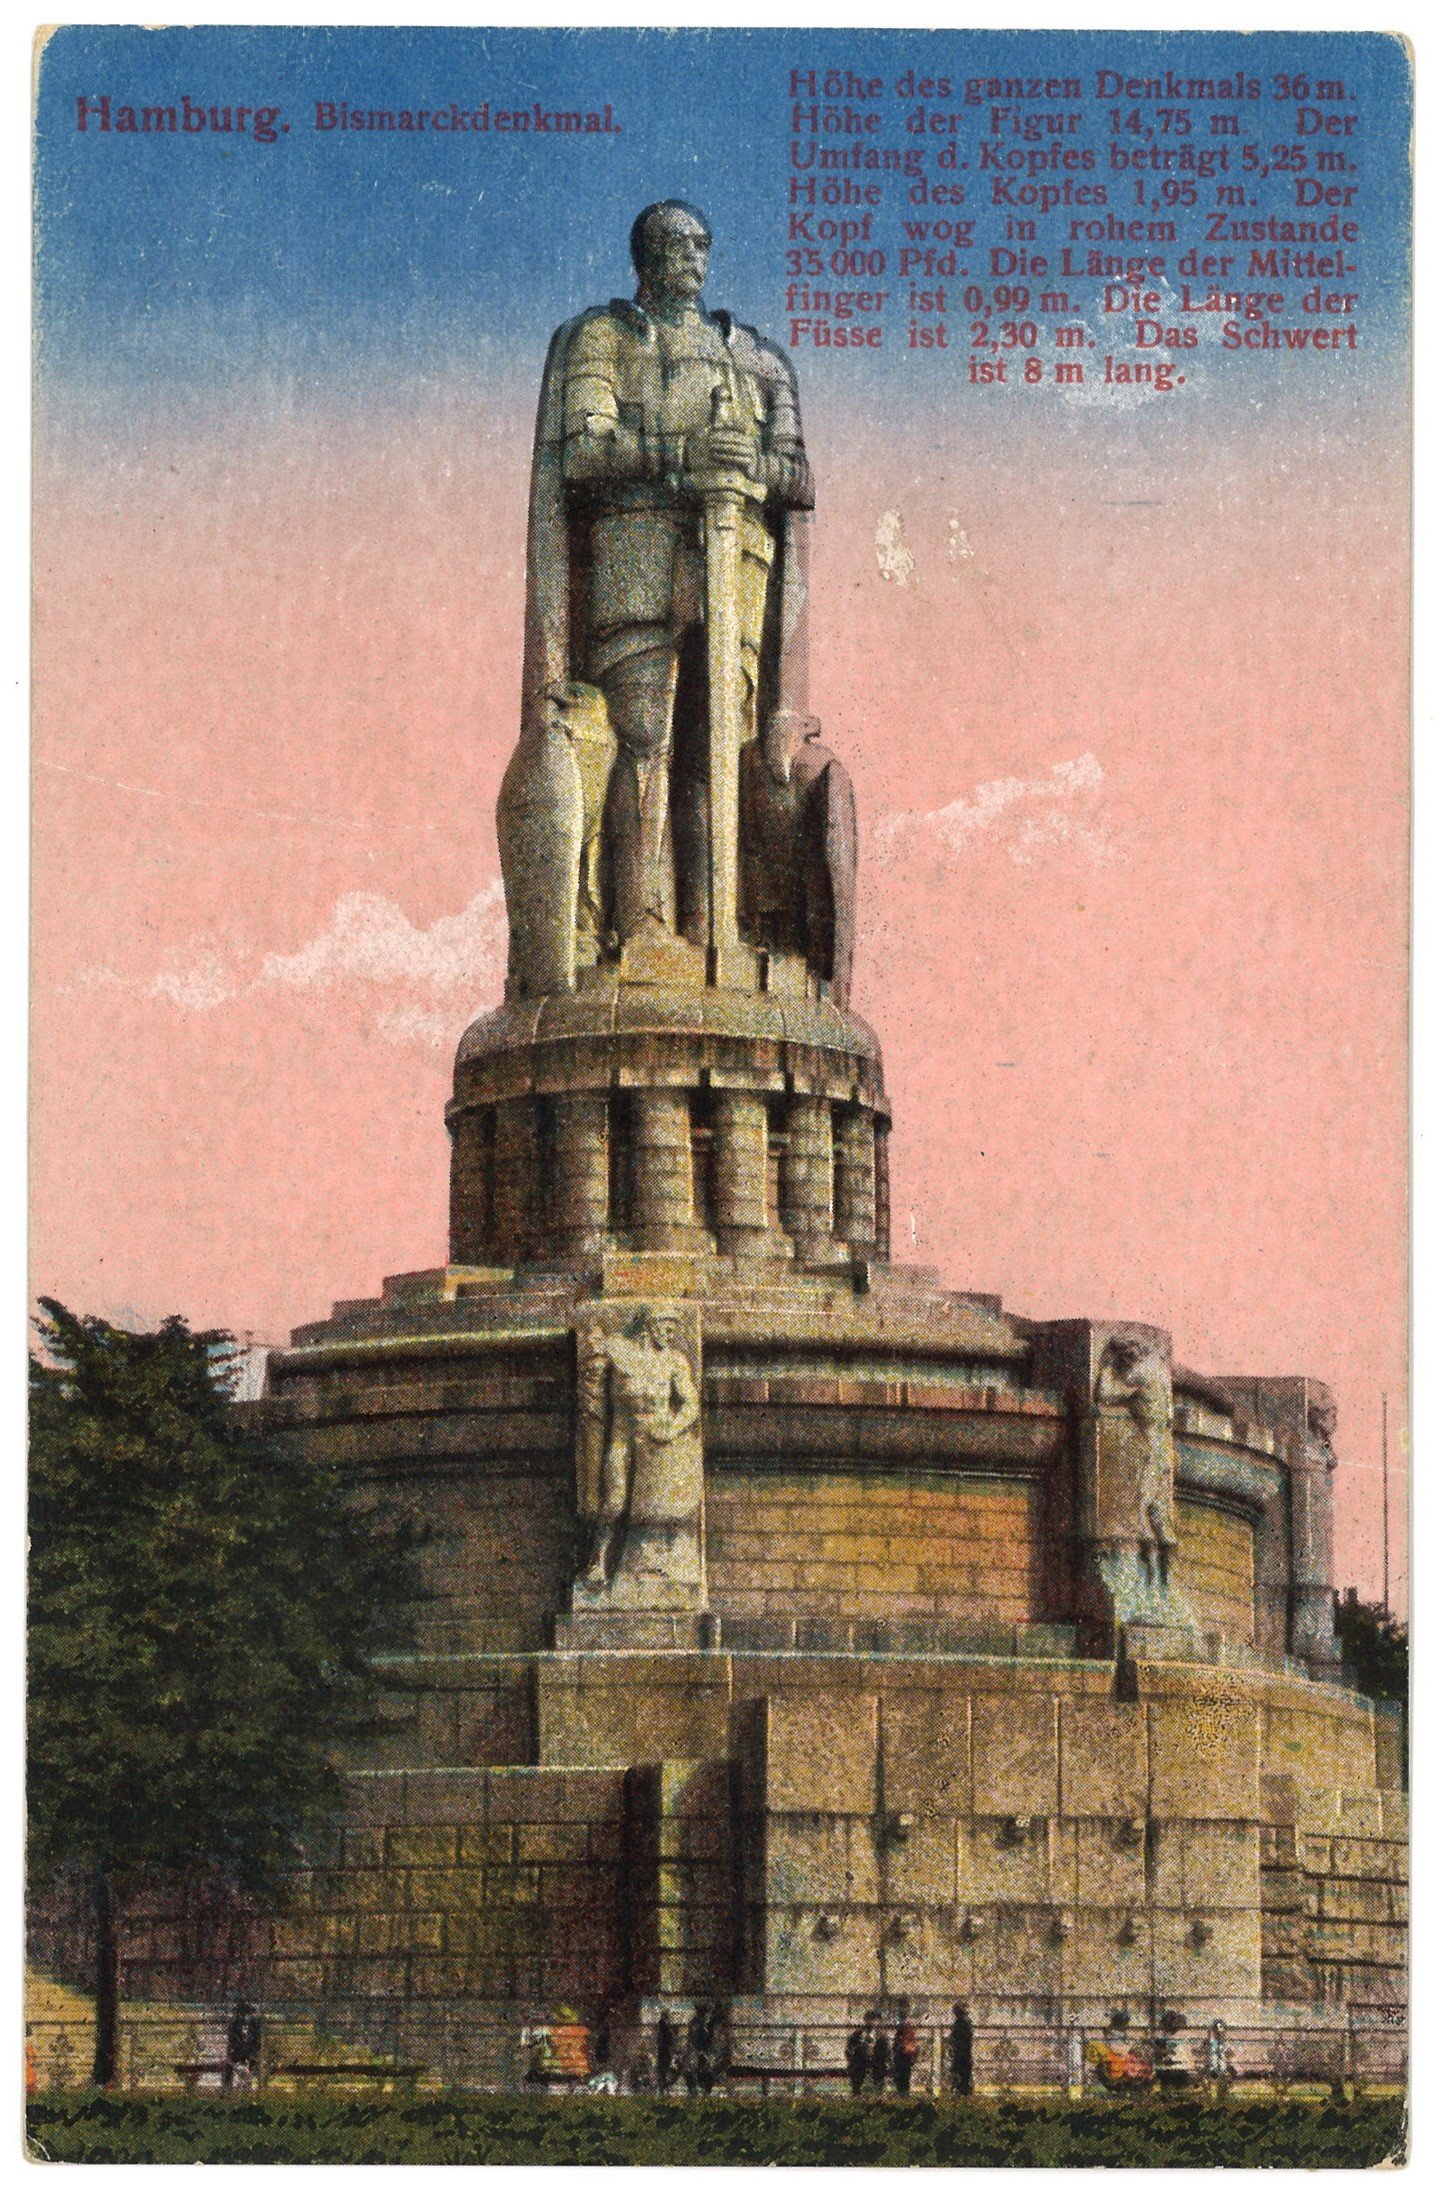 Hamburg: Bismarckdenkmal (Landesgeschichtliche Vereinigung für die Mark Brandenburg e.V. CC BY)